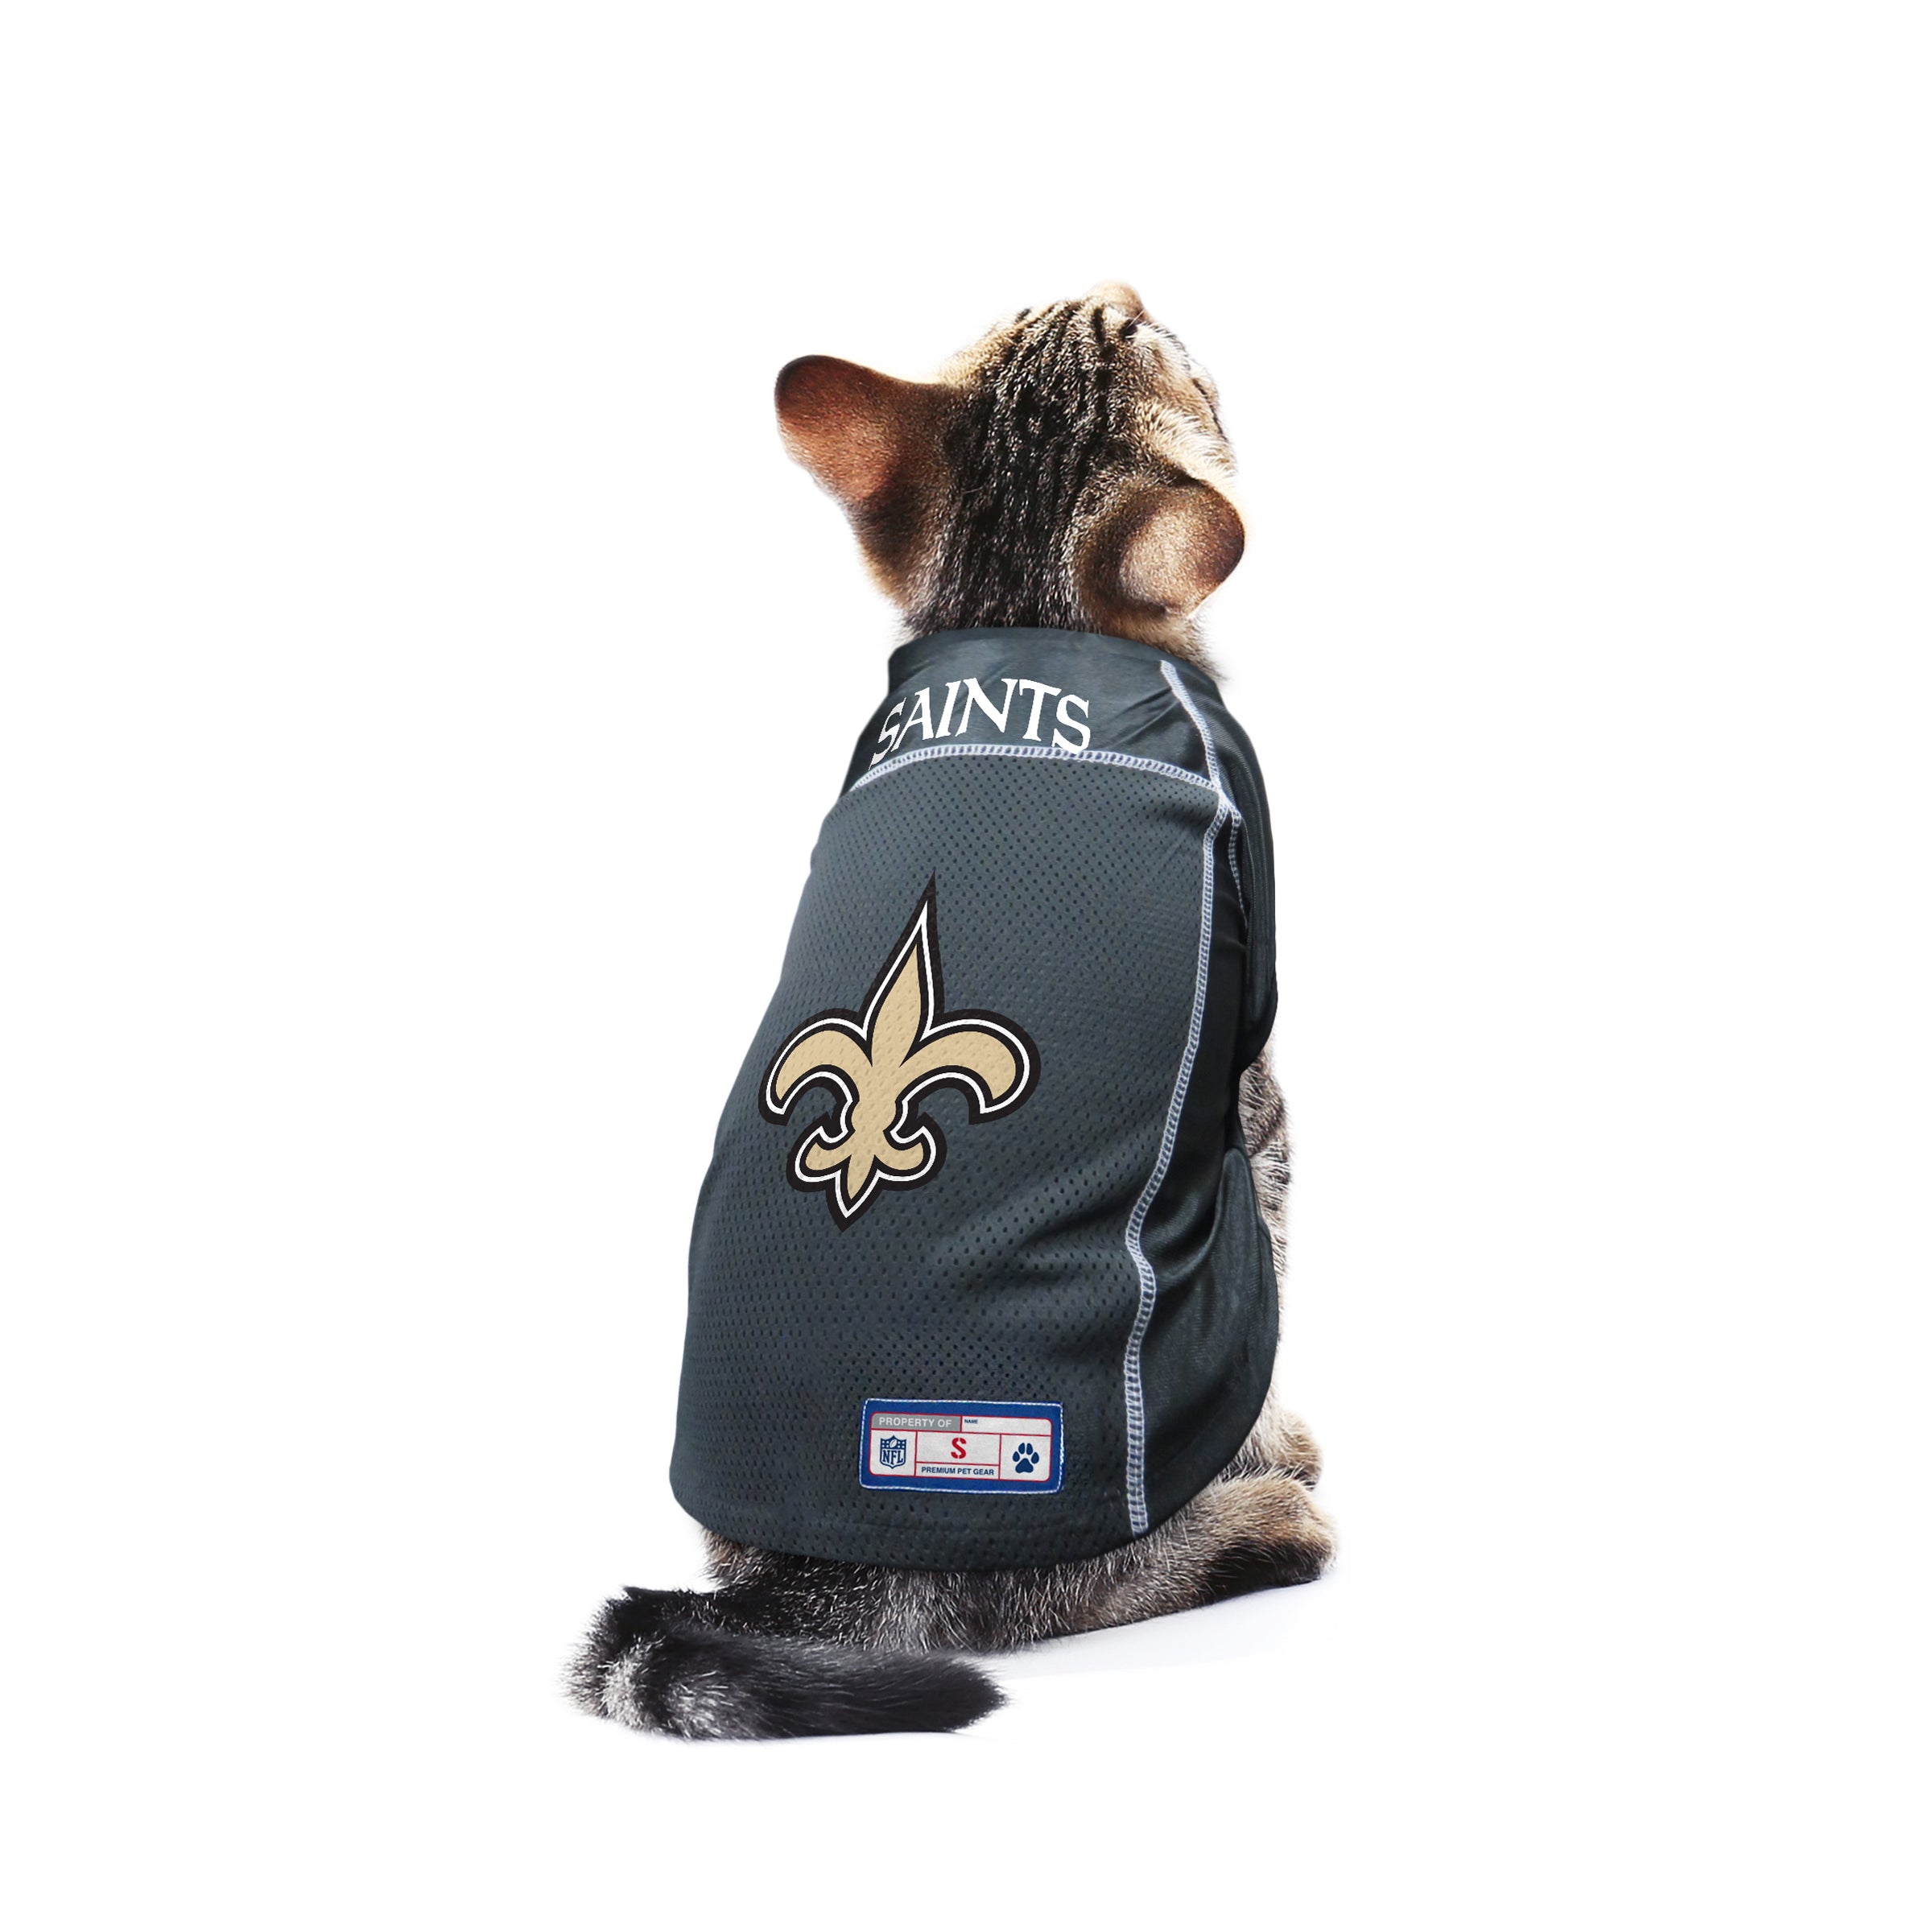 New Orleans Saints Pet Jersey Size S